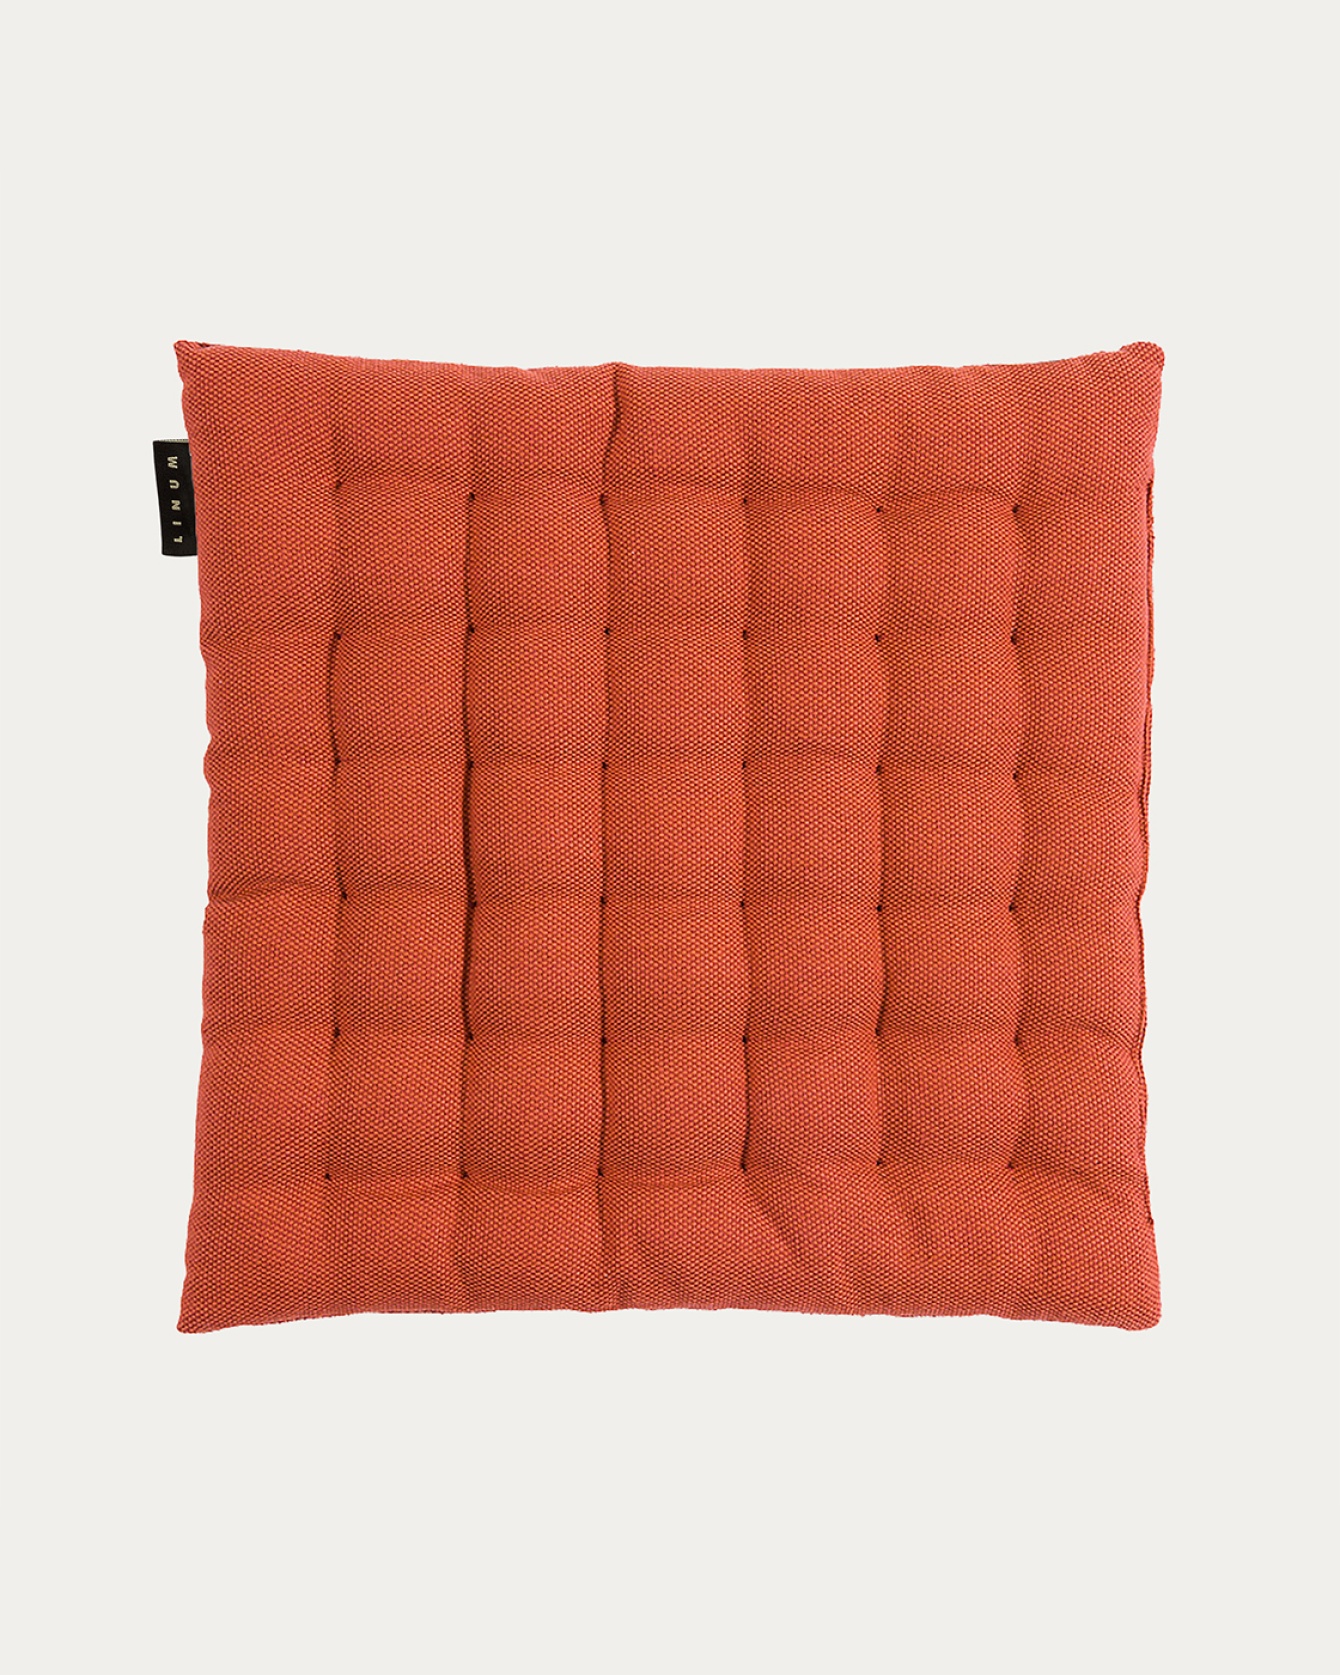 Produktbild rostorange PEPPER Sitzkissen aus weicher Baumwolle mit Füllung aus recyceltem Polyester von LINUM DESIGN. Größe 40x40 cm.